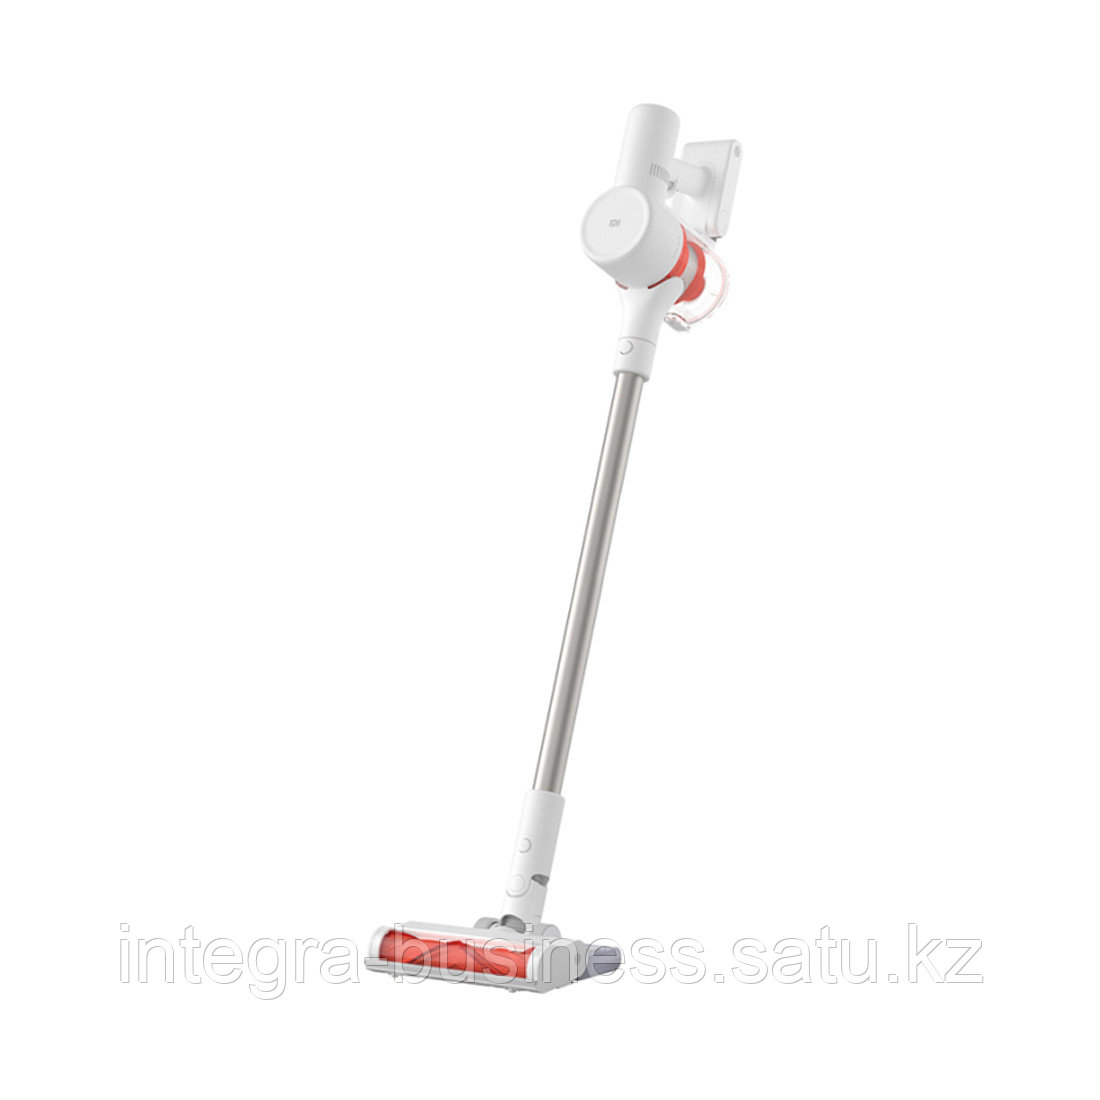 Беспроводной вертикальный пылесос Xiaomi Mi Vacuum Cleaner G10, фото 1